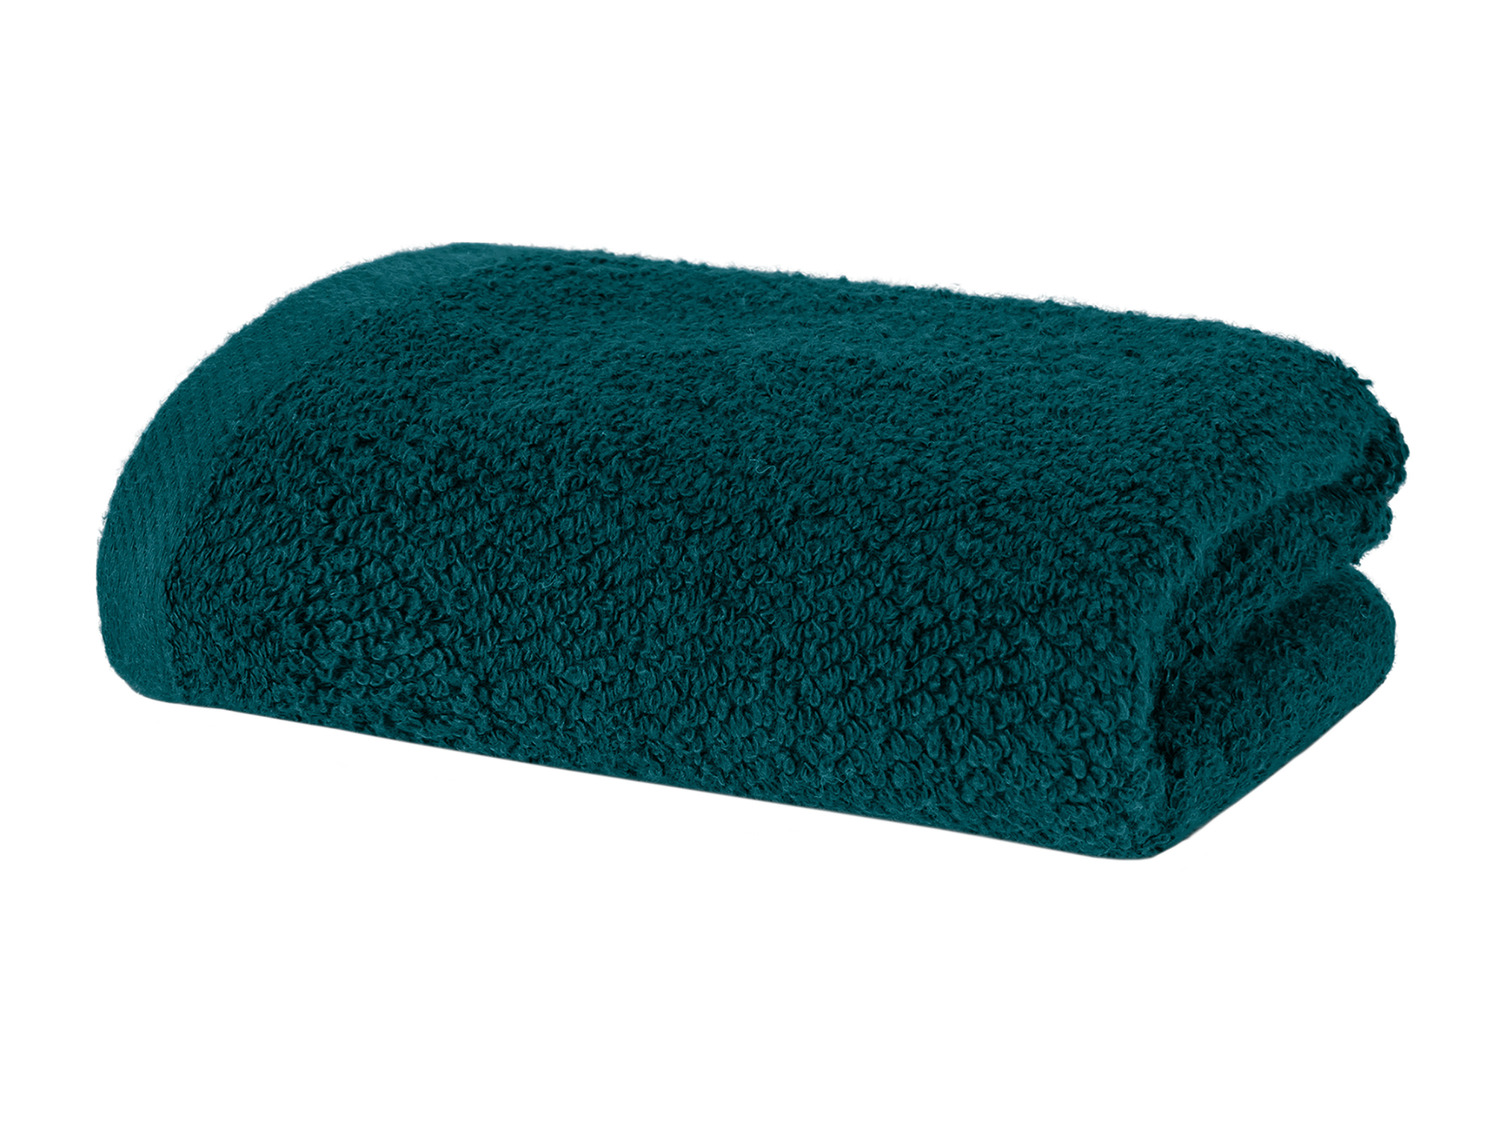 Ręcznik 50 x 100 cm , cena 14,99 PLN 
- 500 g/m2
- 100% bawełny
- technologia ...